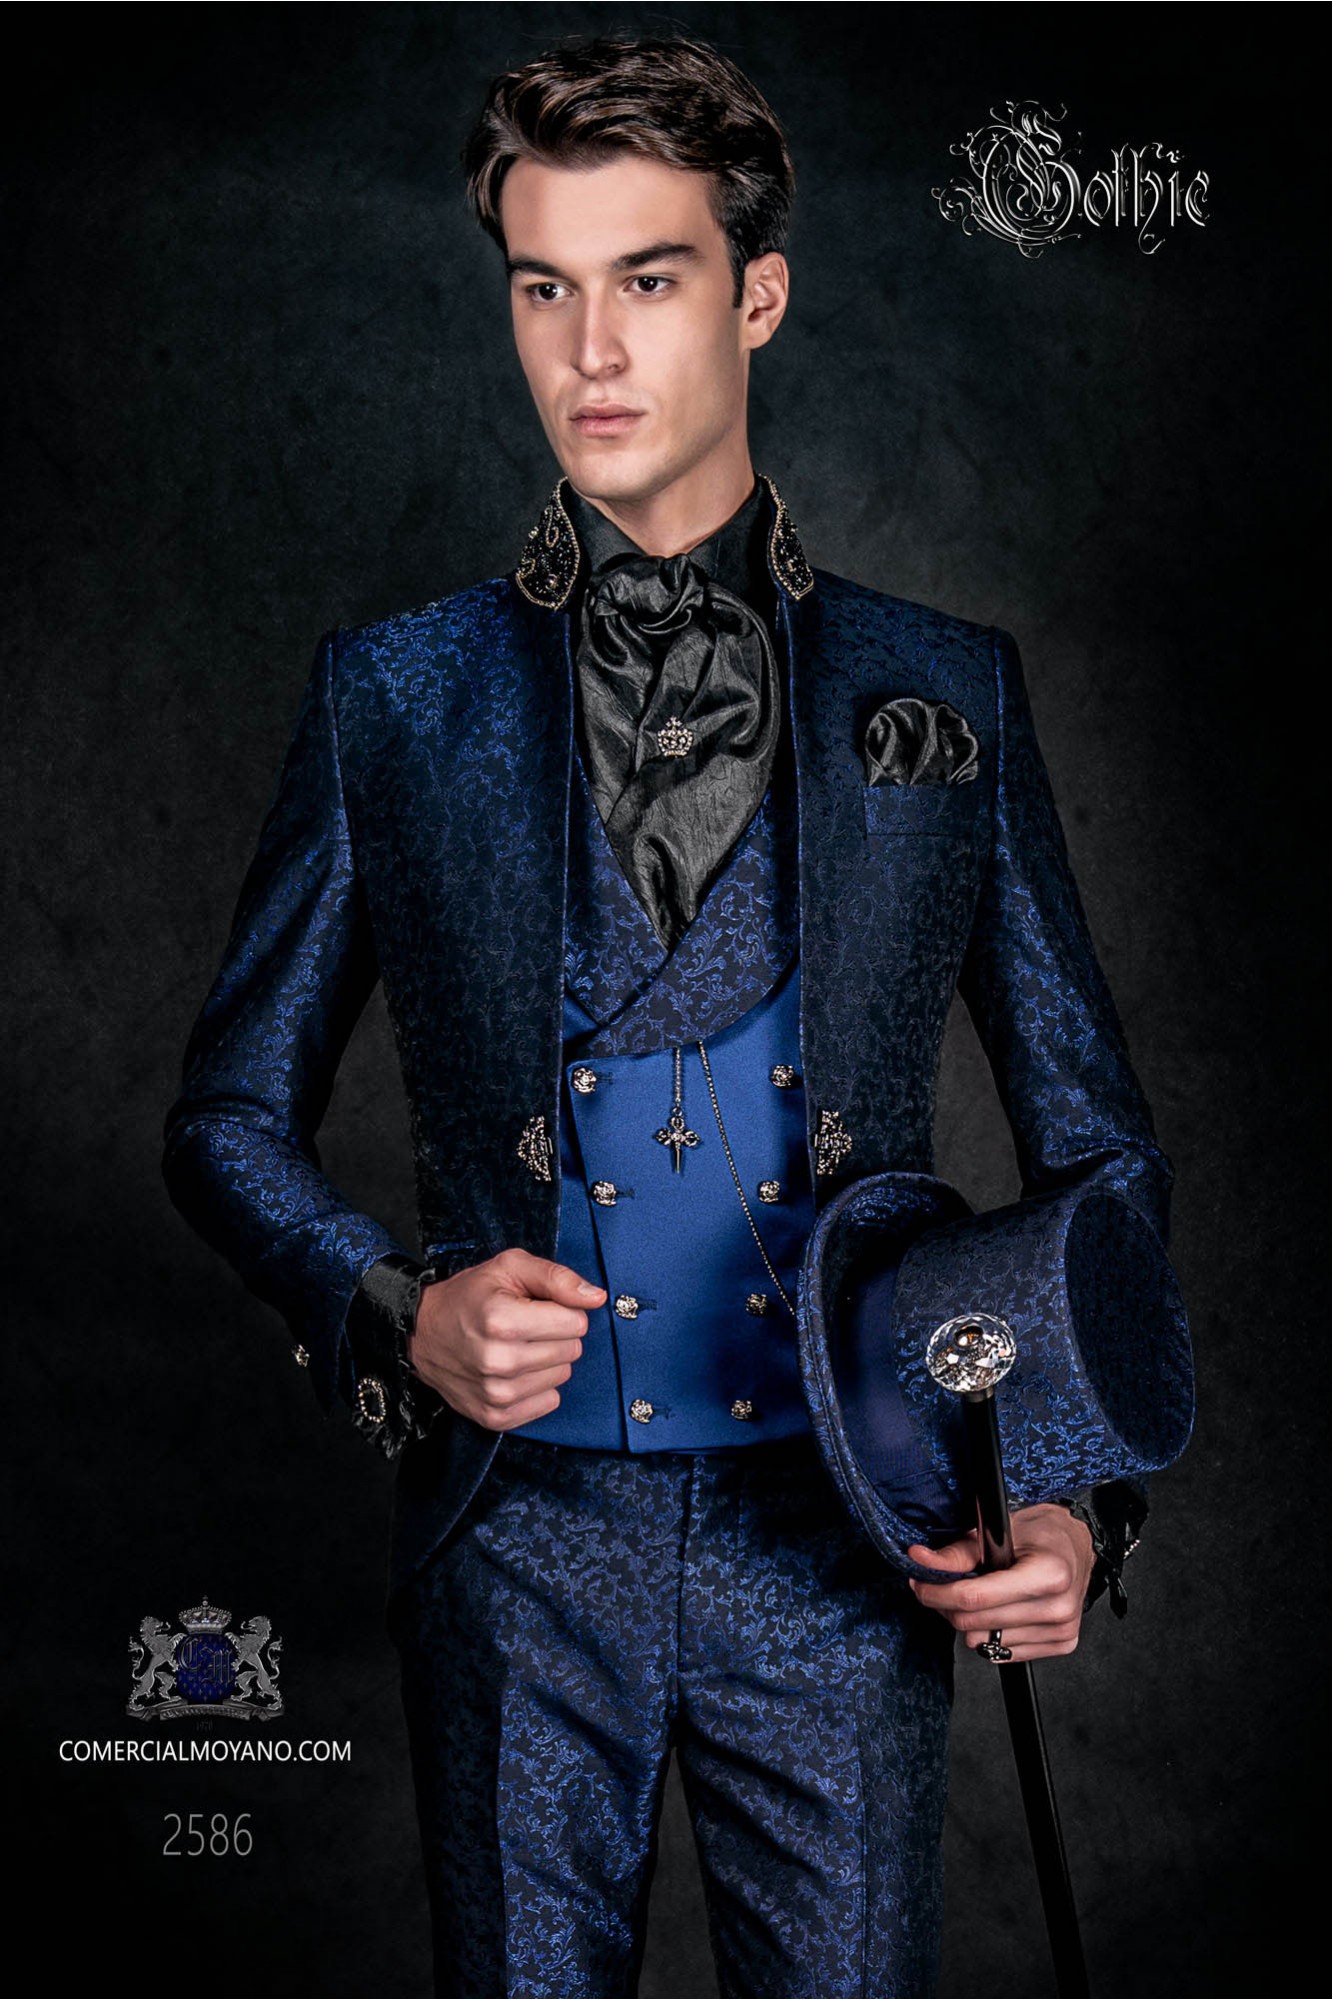 Vintage Men wedding frock coat in blue-black brocade fabric with Mao collar with black rhinestones model 2586 Mario Moyano